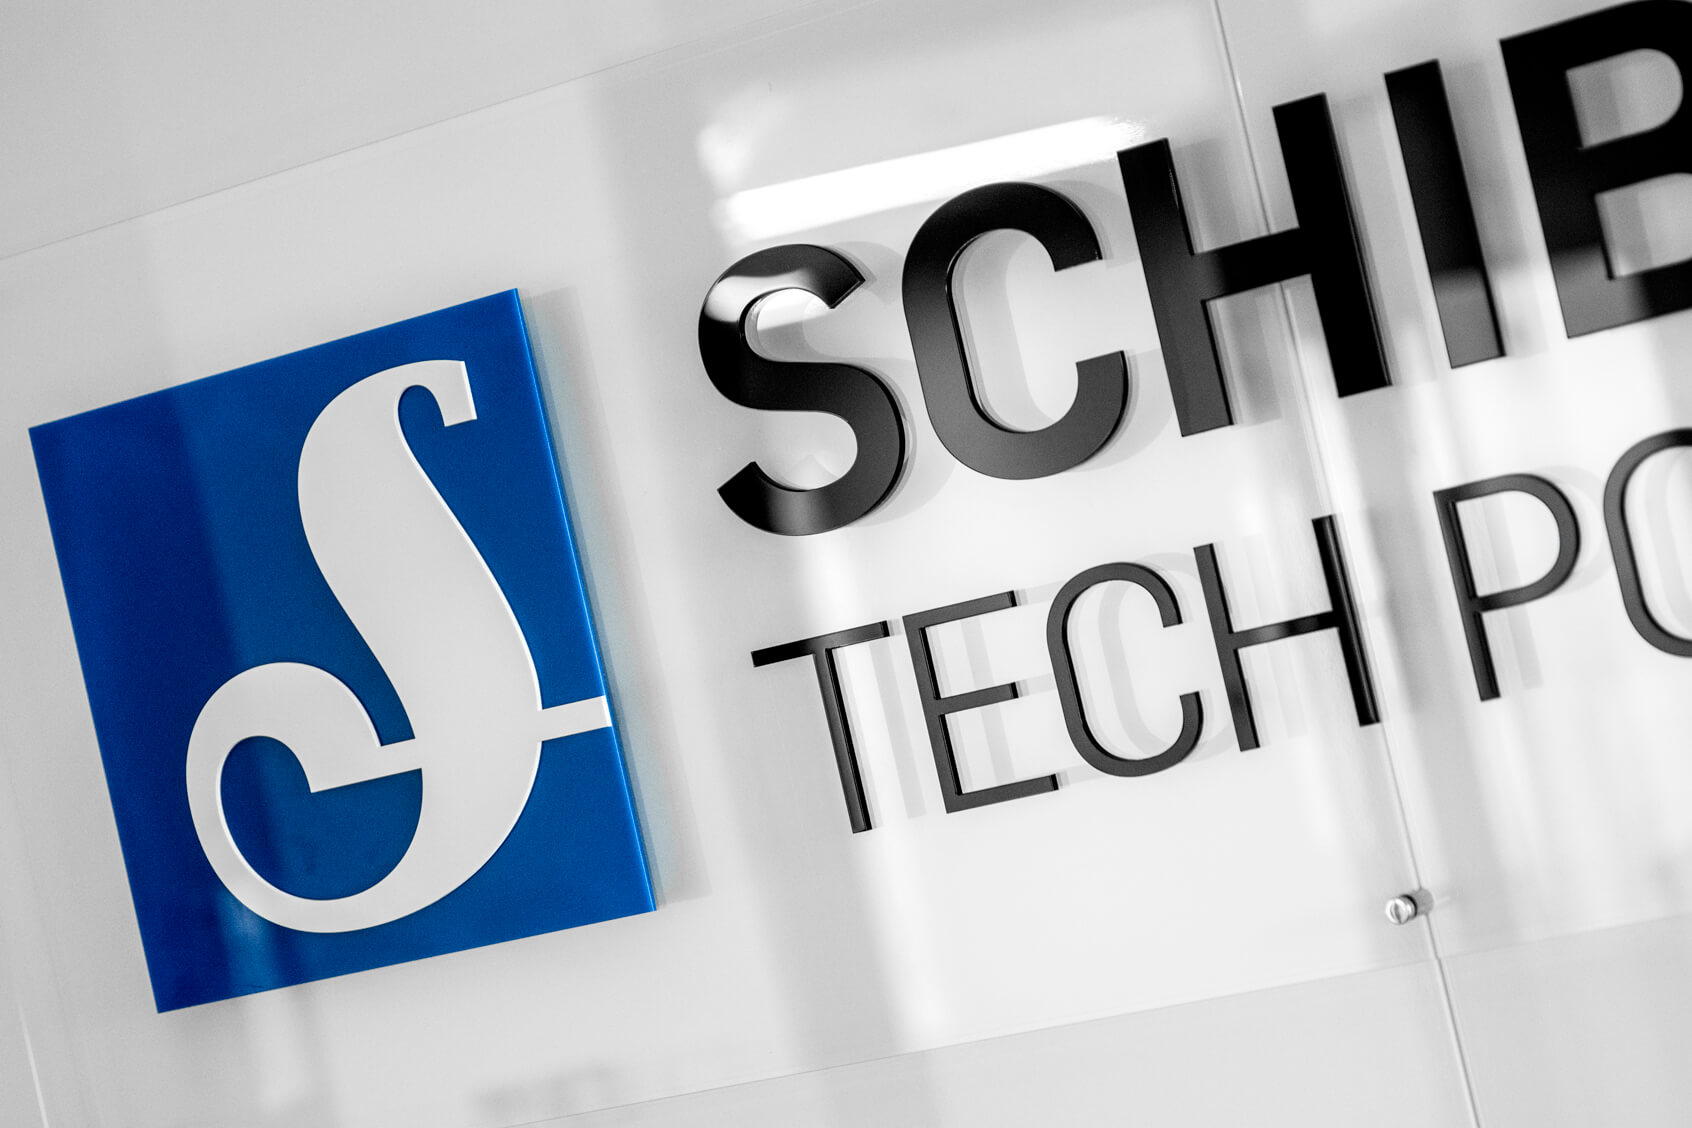 Schibsted Tech Polen - Schibsted Tech Poland - Logo und 3D-Buchstaben auf Plexiglasunterlage, montiert auf Abstandshaltern im Empfangsbereich